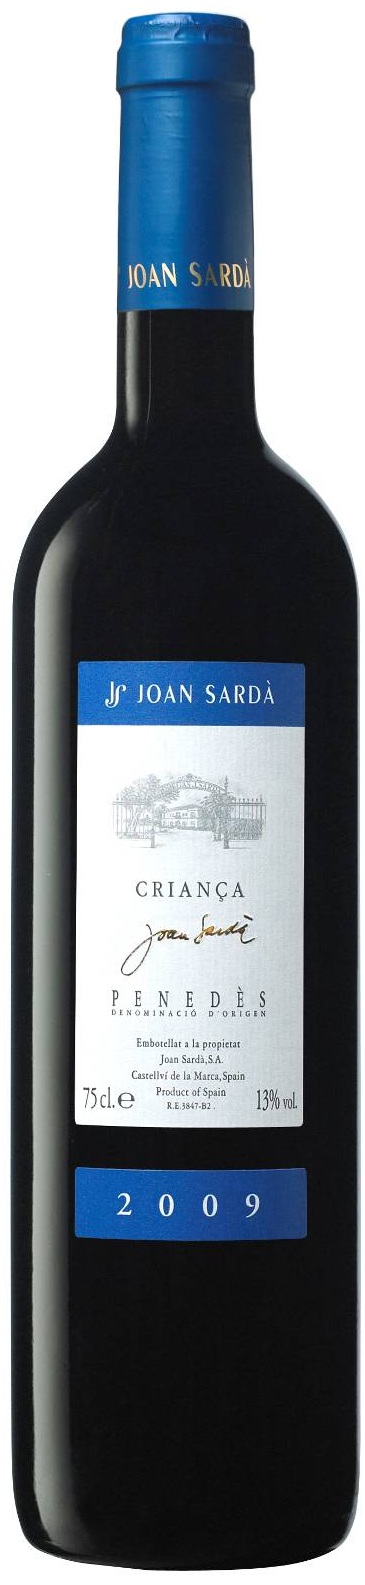 Image of Wine bottle Joan Sardà Criança